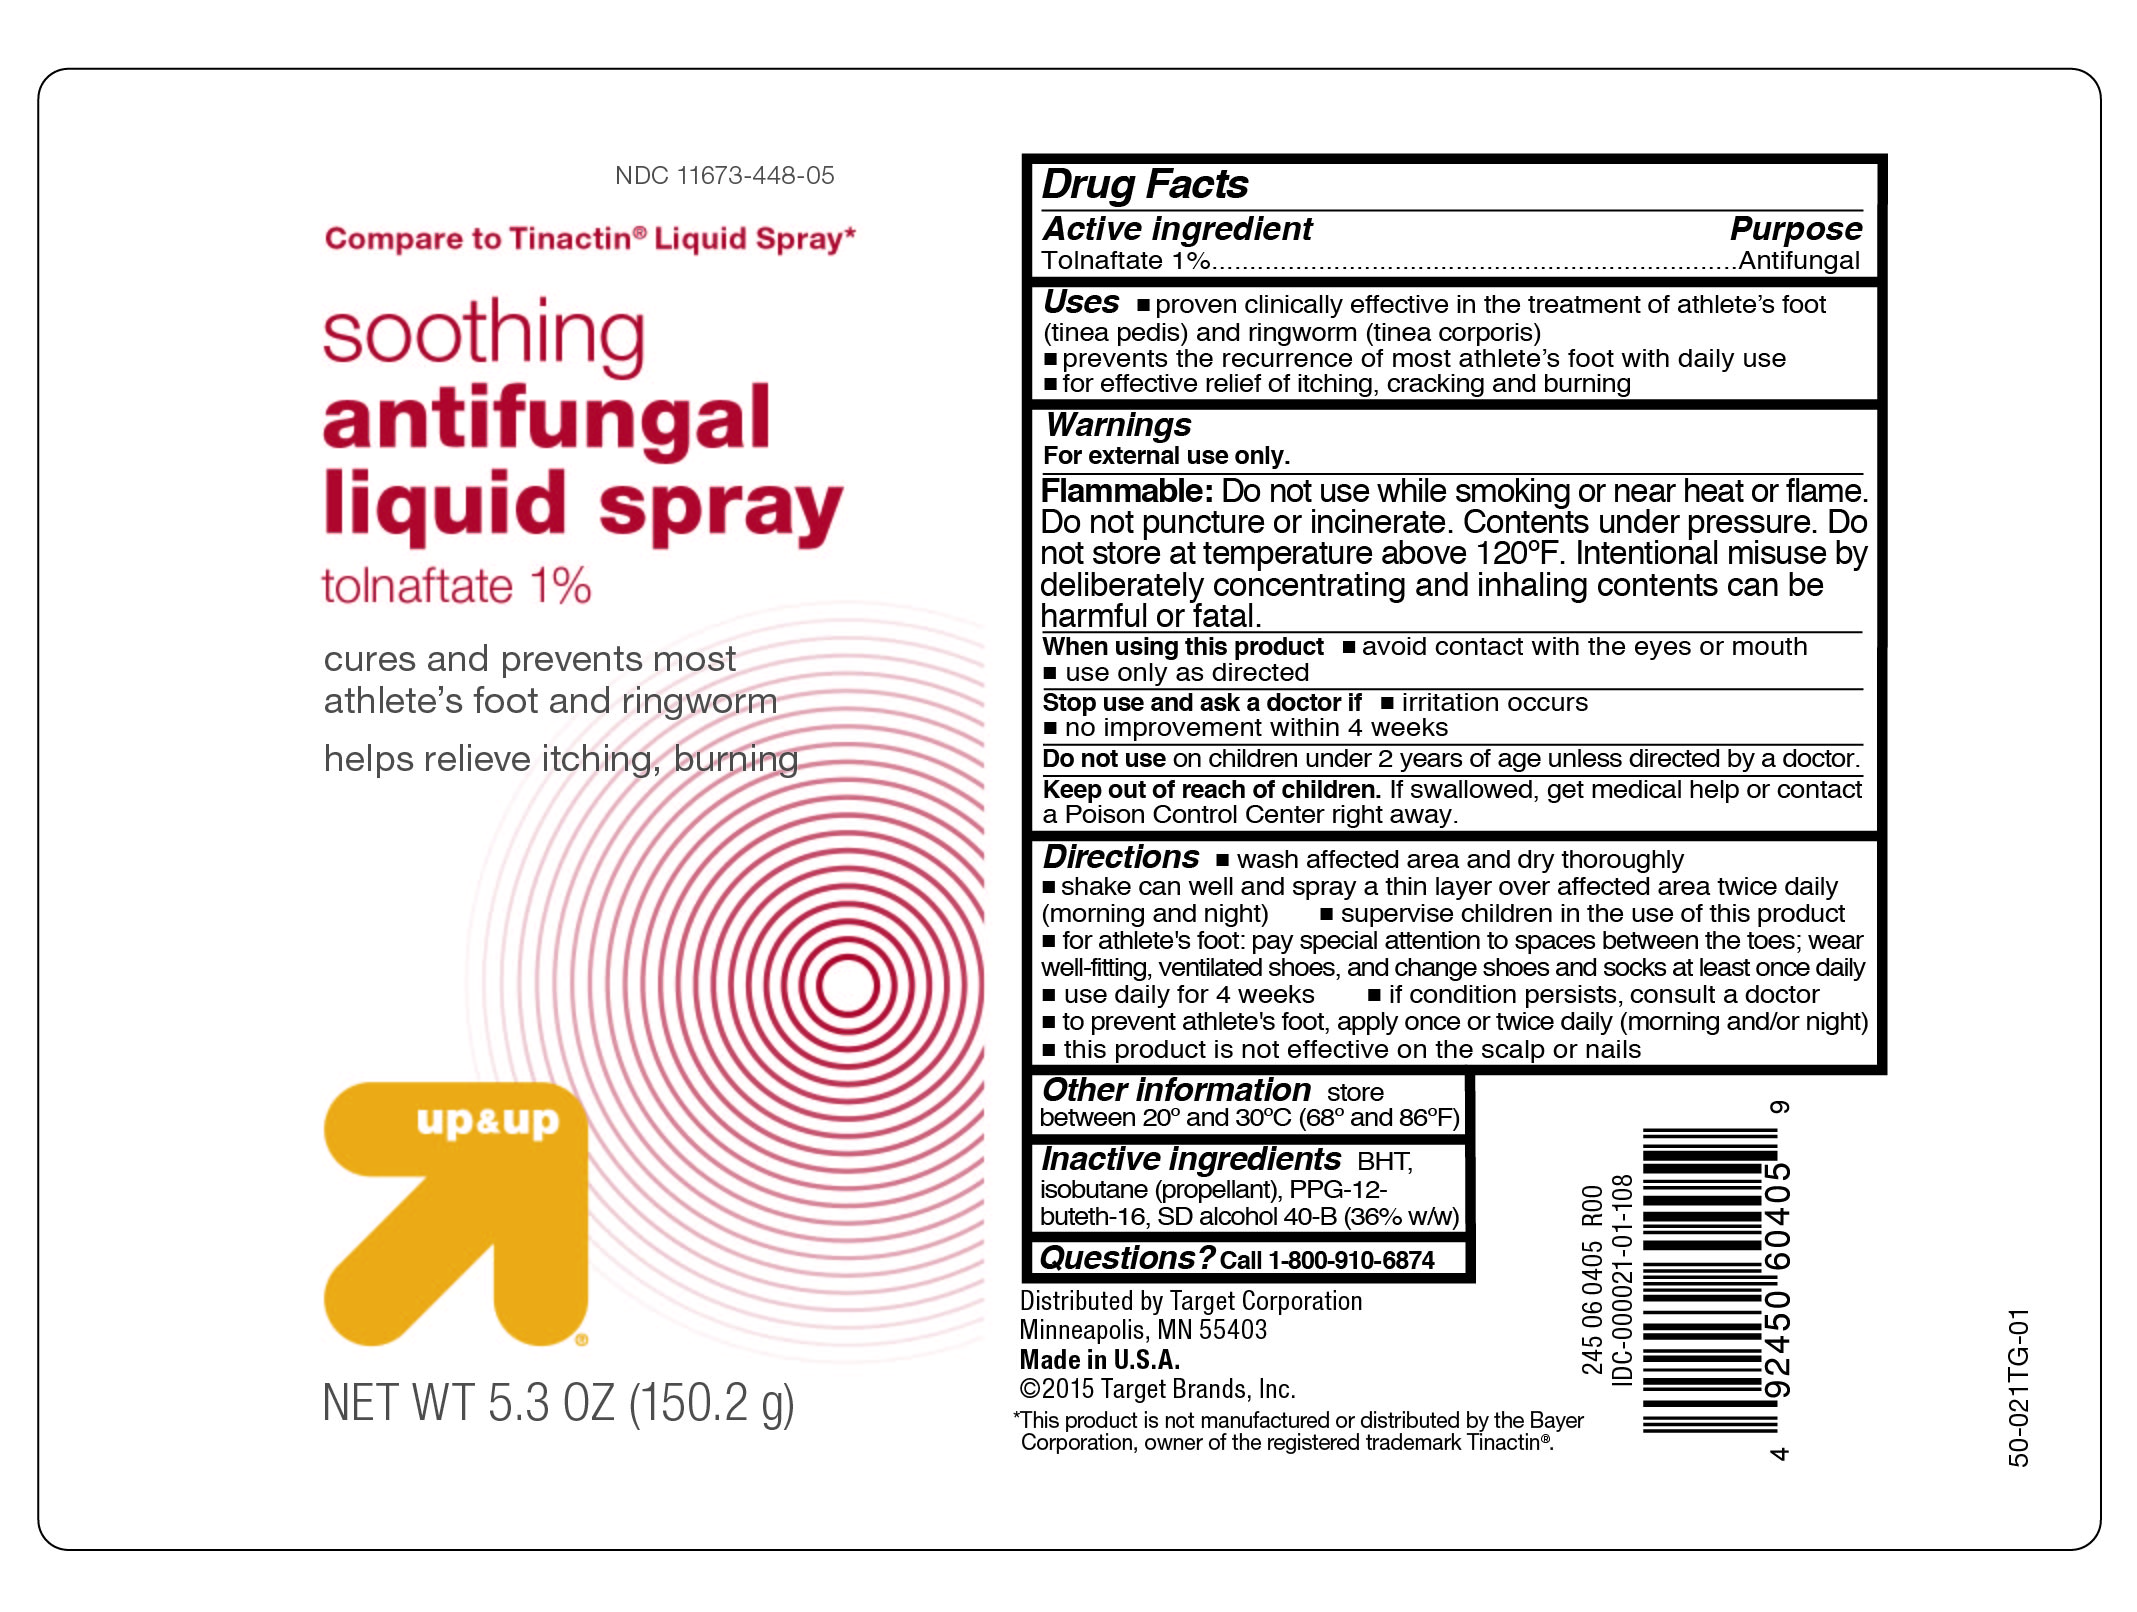 Target Soothing Antifungal Liquid Spray.jpg